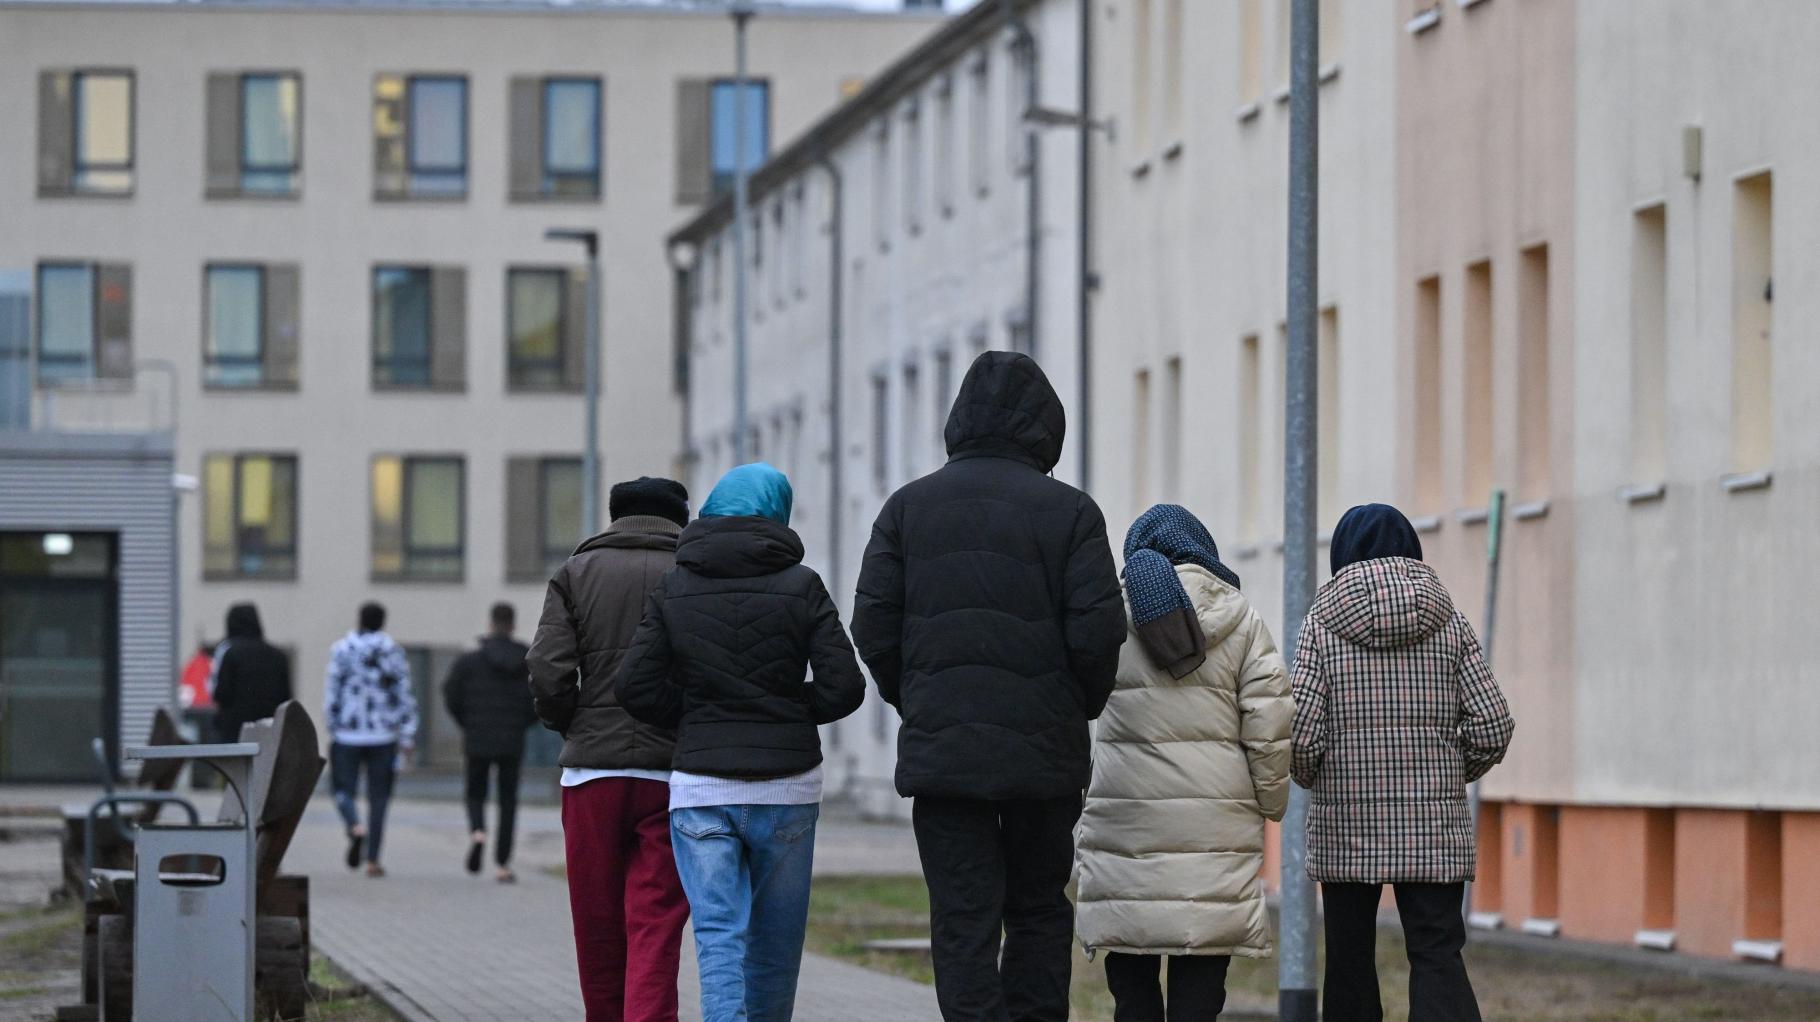 Rostocker CDU stößt bei Arbeitspflicht für Asylbewerber auf Ablehnung